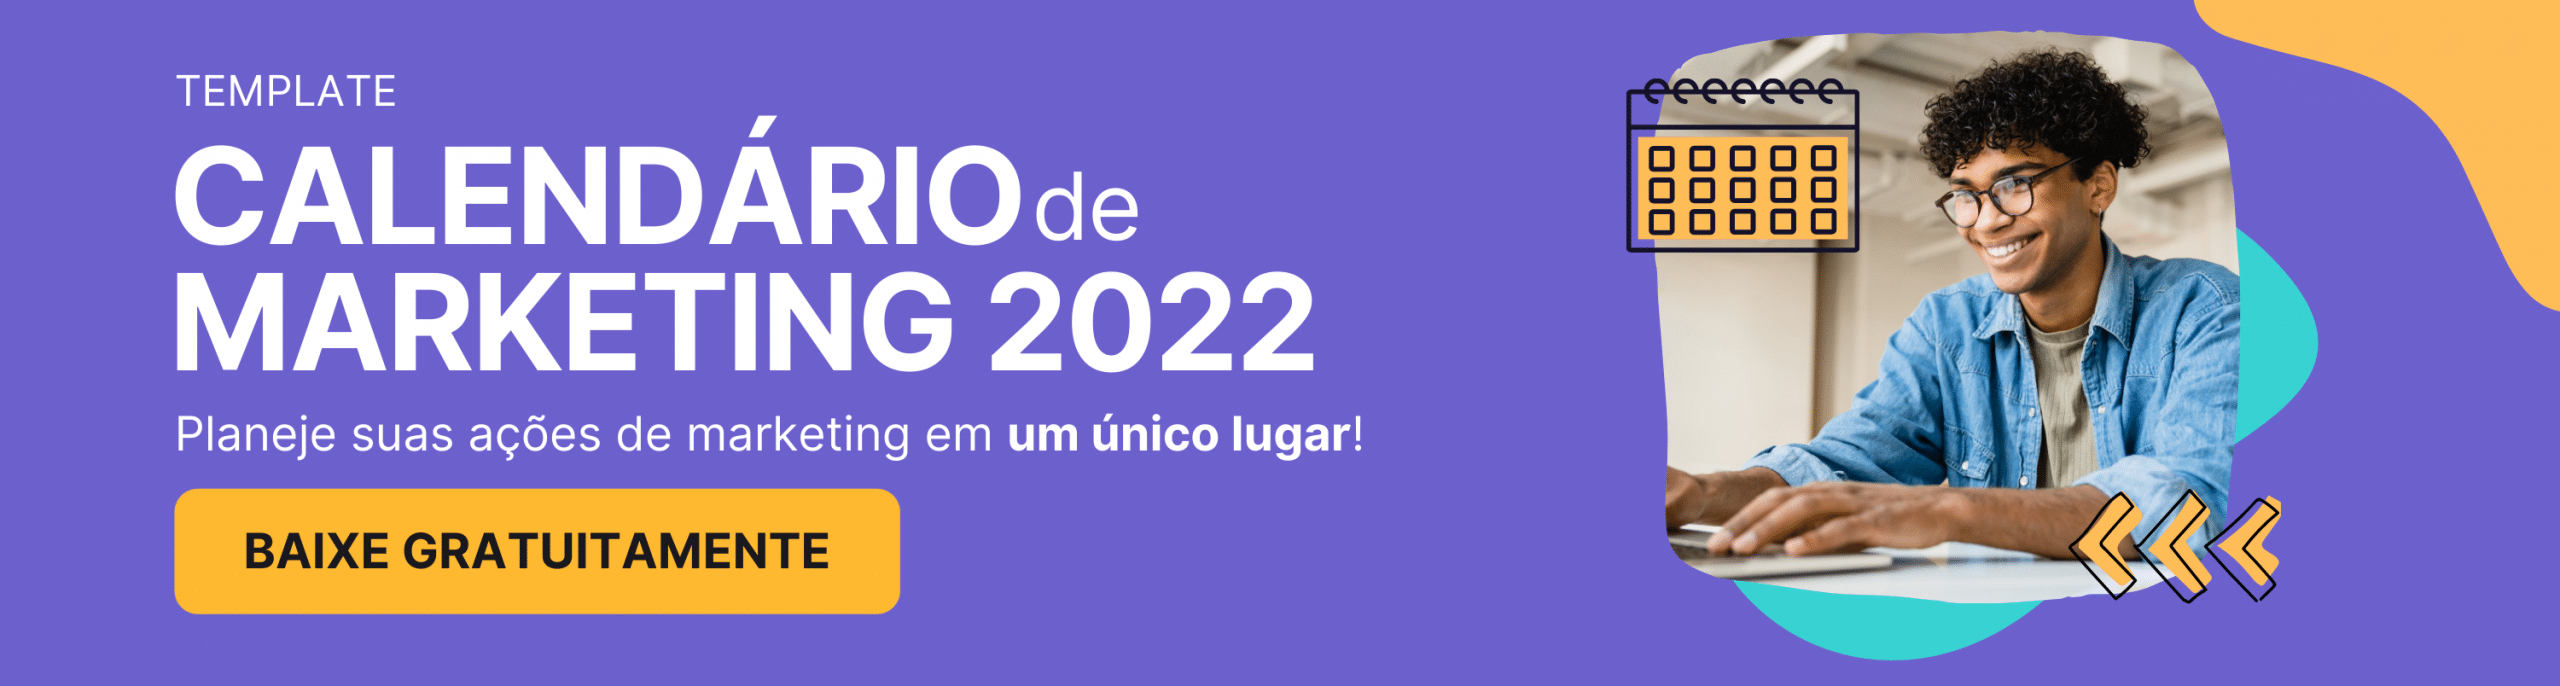 Calendário de Marketing 2022